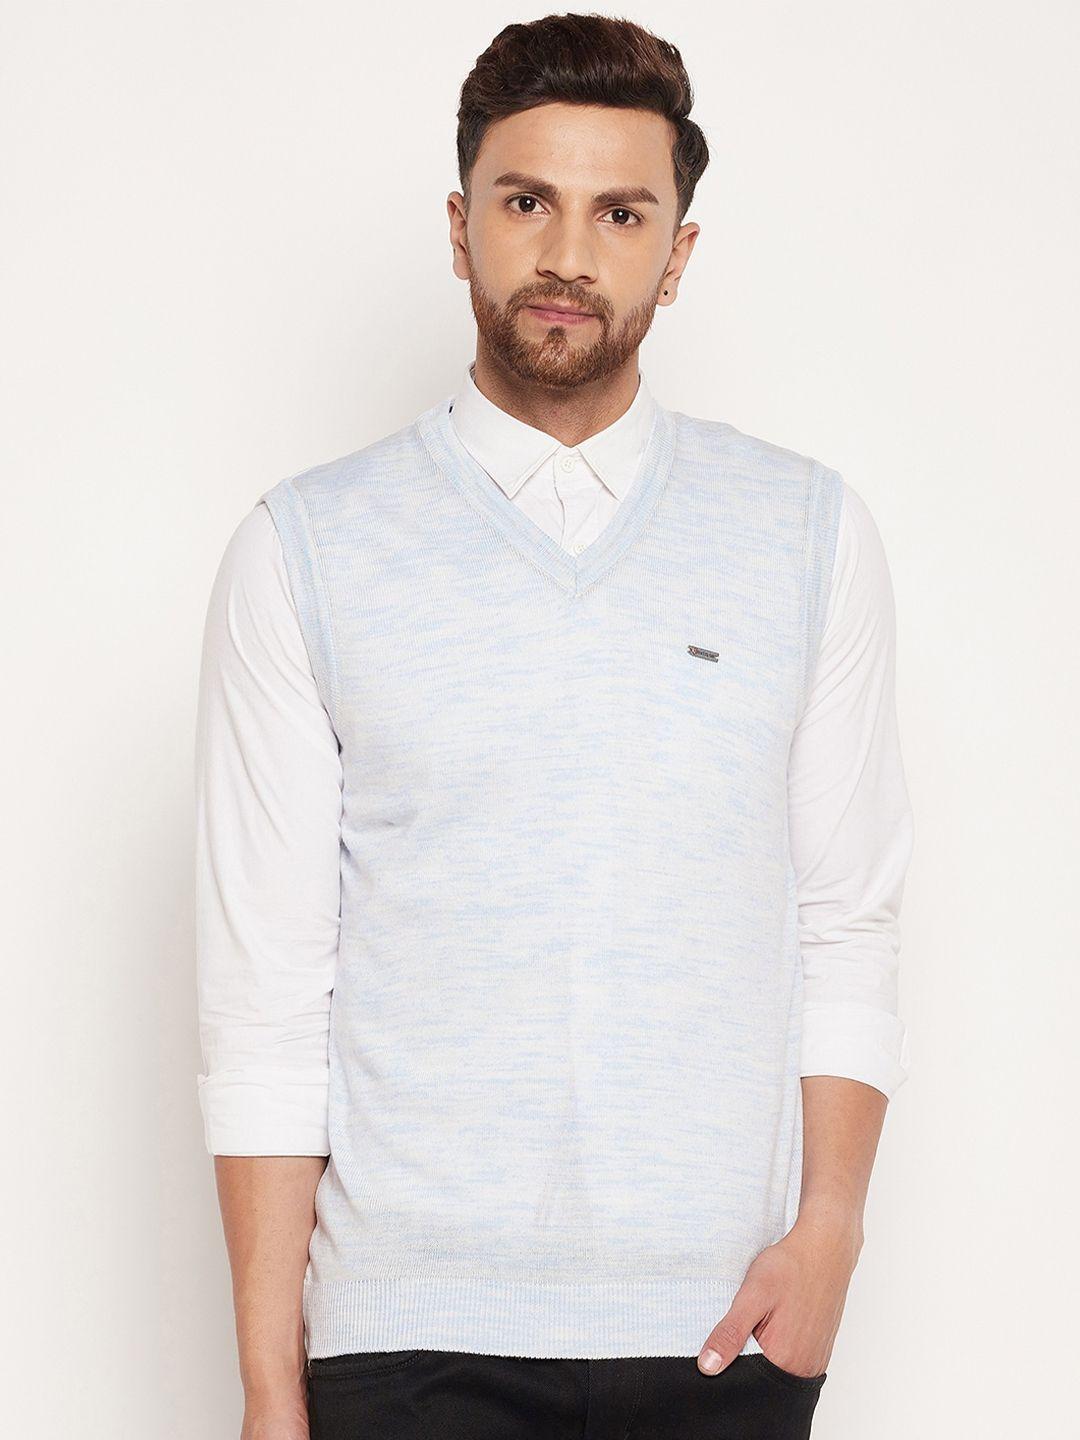 duke-men-blue-&-white-ribbed-sweater-vest